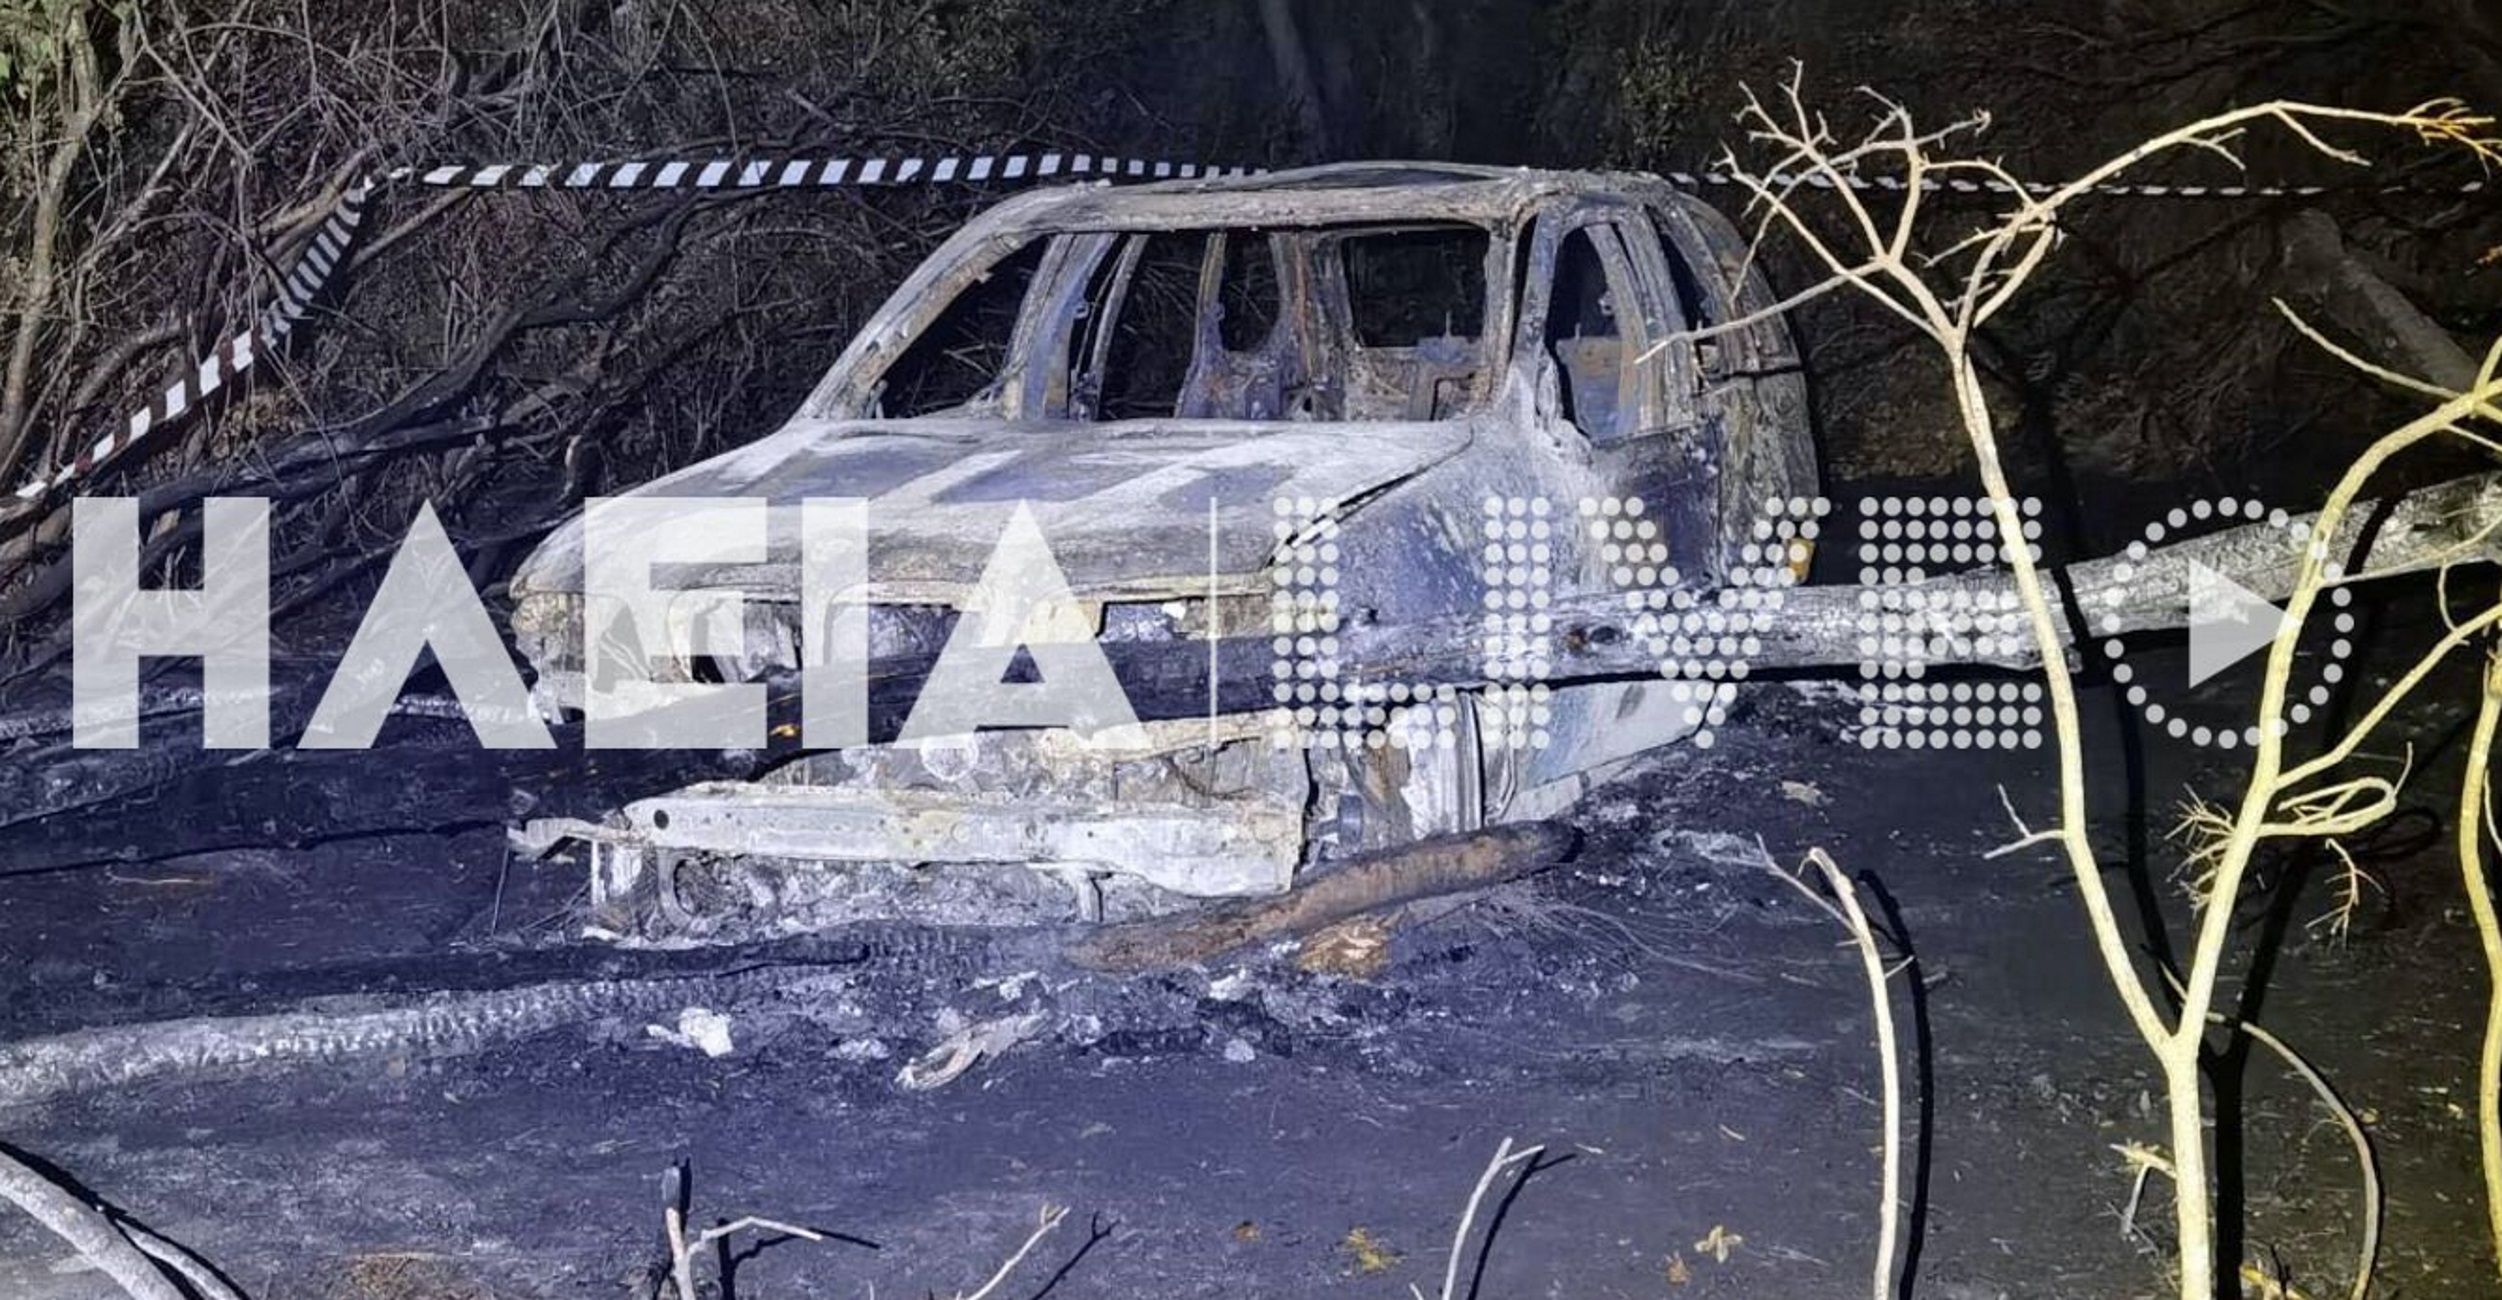 Ηλεία: Επιχειρηματίας ο άντρας που βρέθηκε απανθρακωμένος – Συνεχείς εκρήξεις στο αυτοκίνητό του